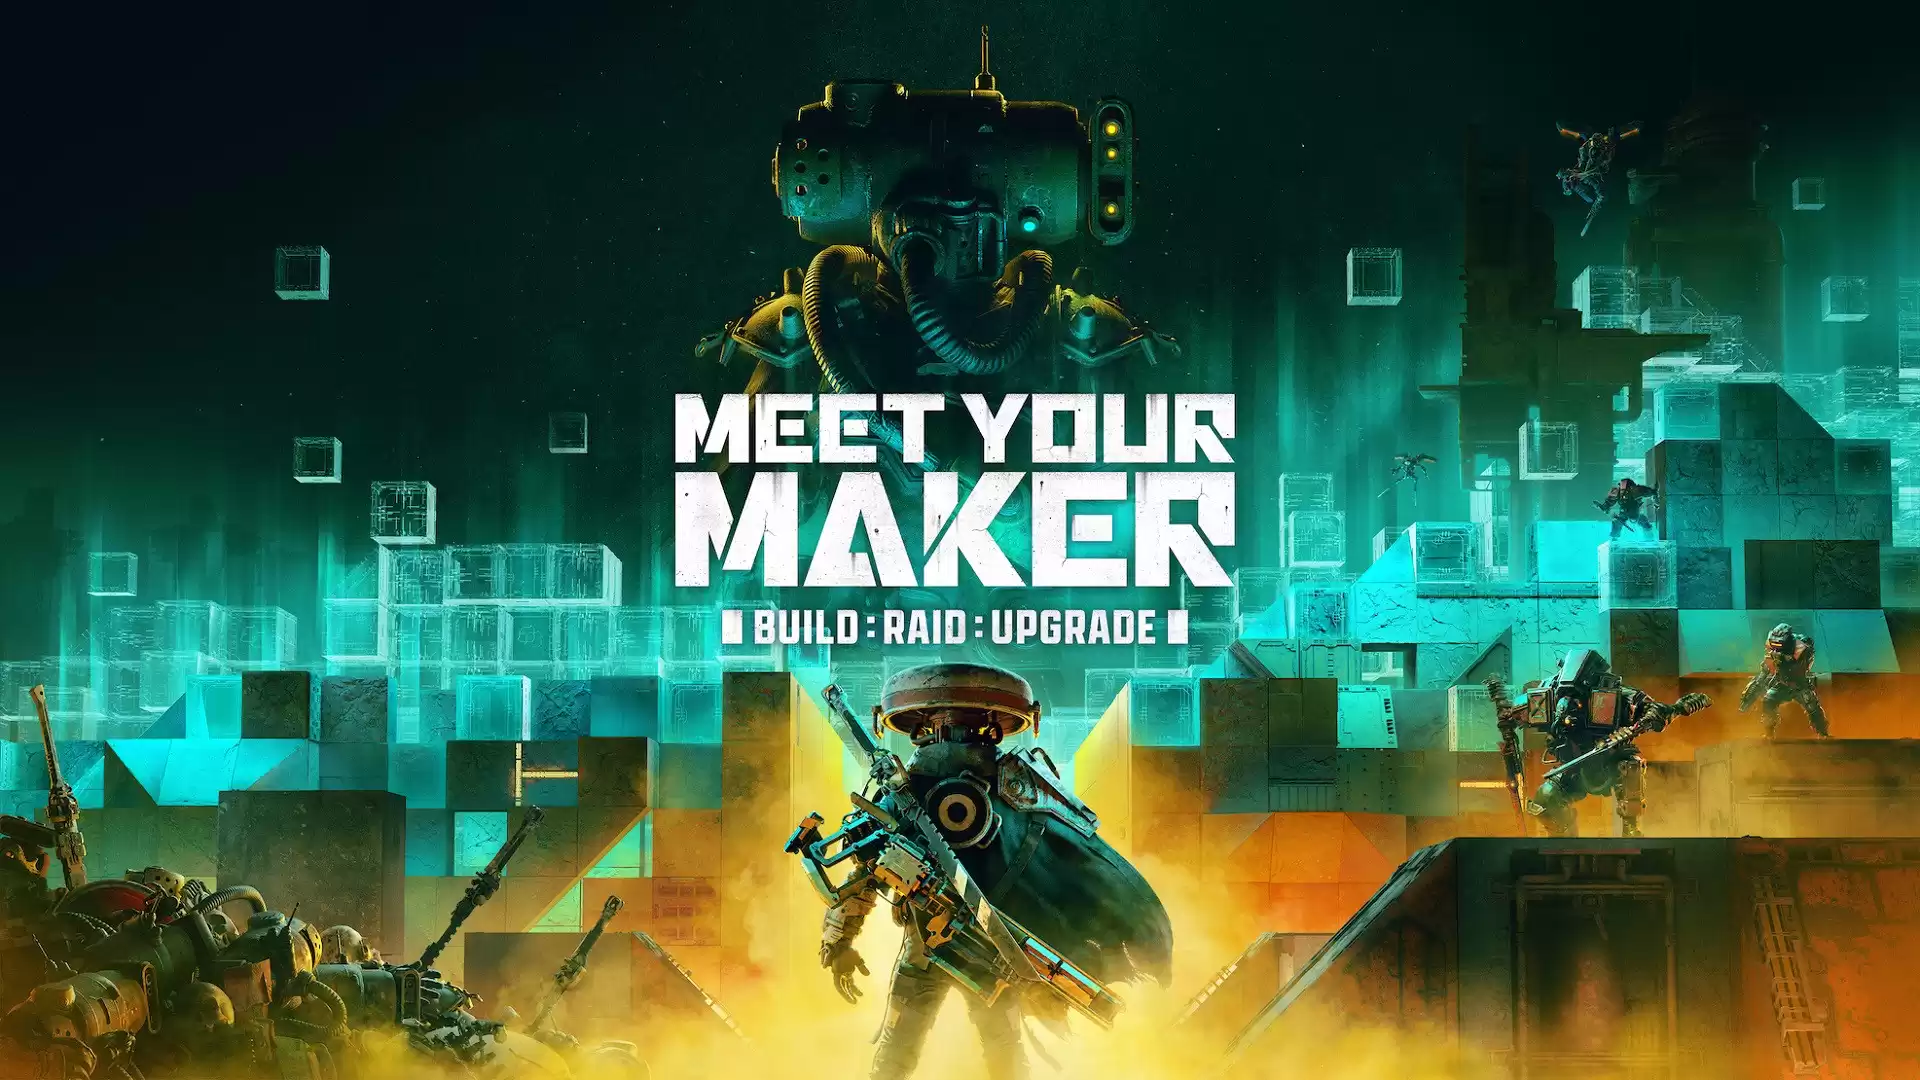 Meet Your Maker - играть онлайн | Где купить и скачать игру?